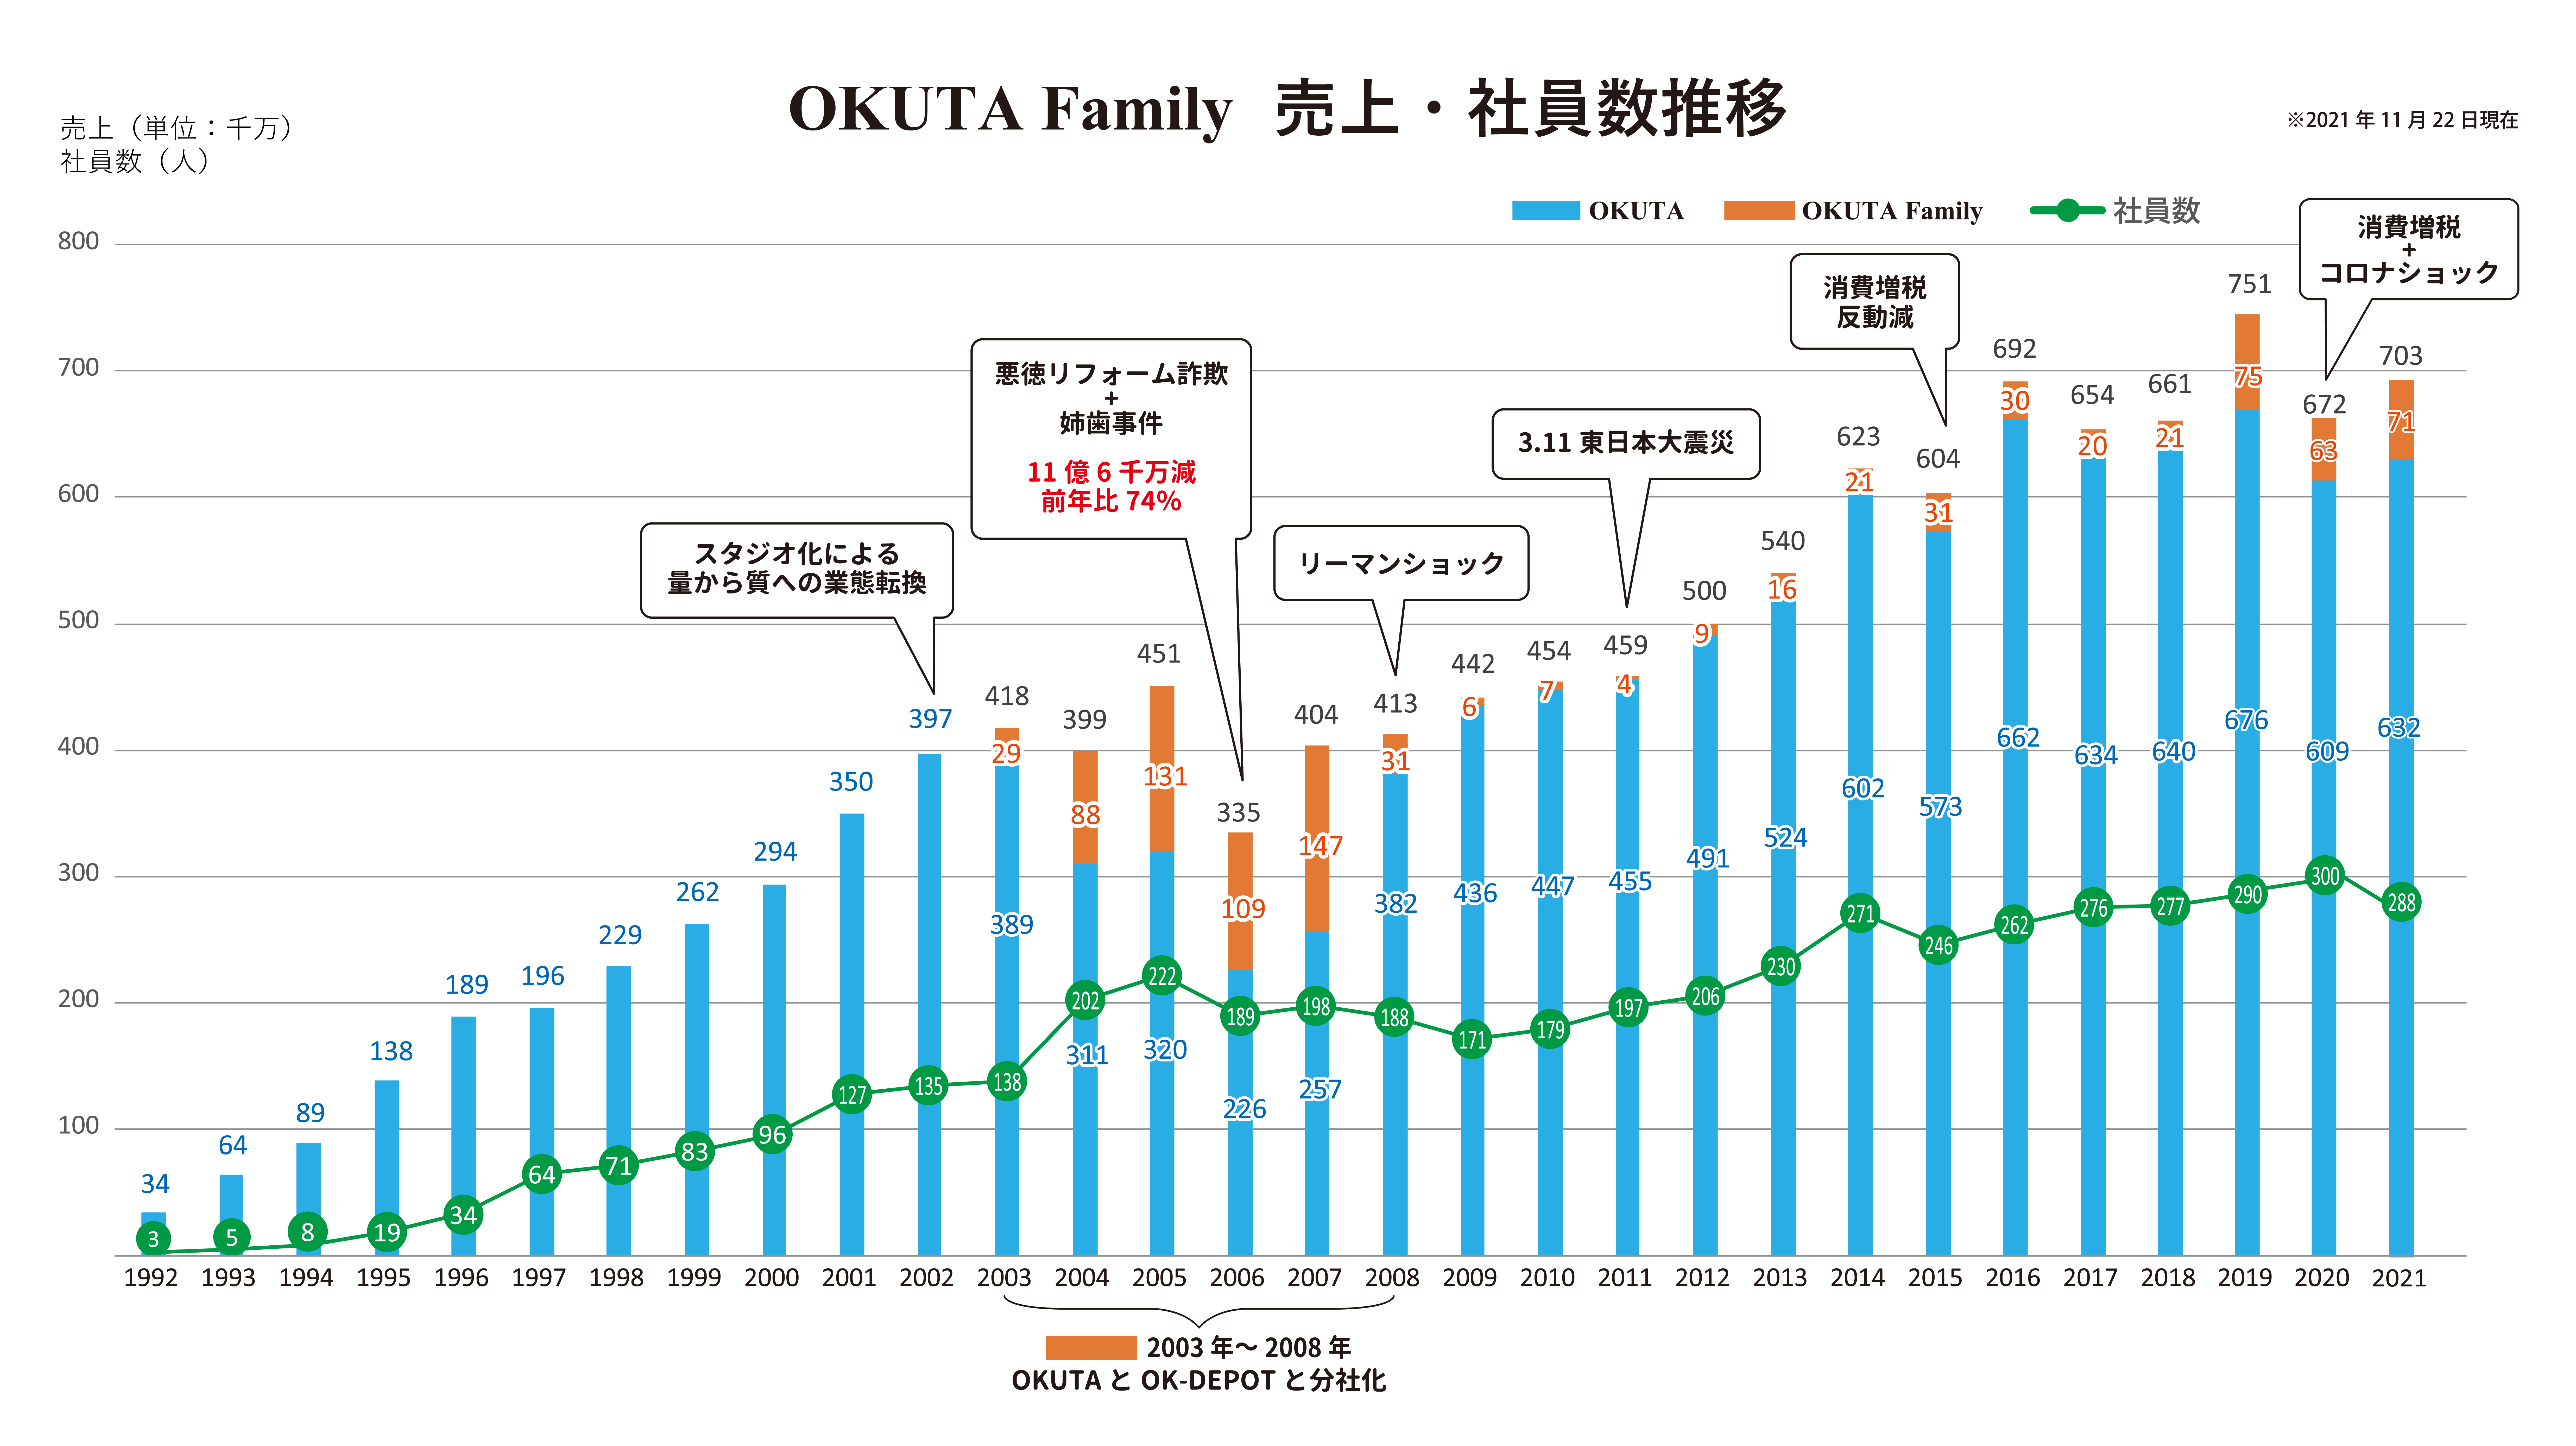 20211122okuta-family%e5%a3%b2%e4%b8%8a%e3%83%bb%e7%a4%be%e5%93%a1%e6%95%b0-%ef%bc%8830%e6%9c%9f%ef%bc%89